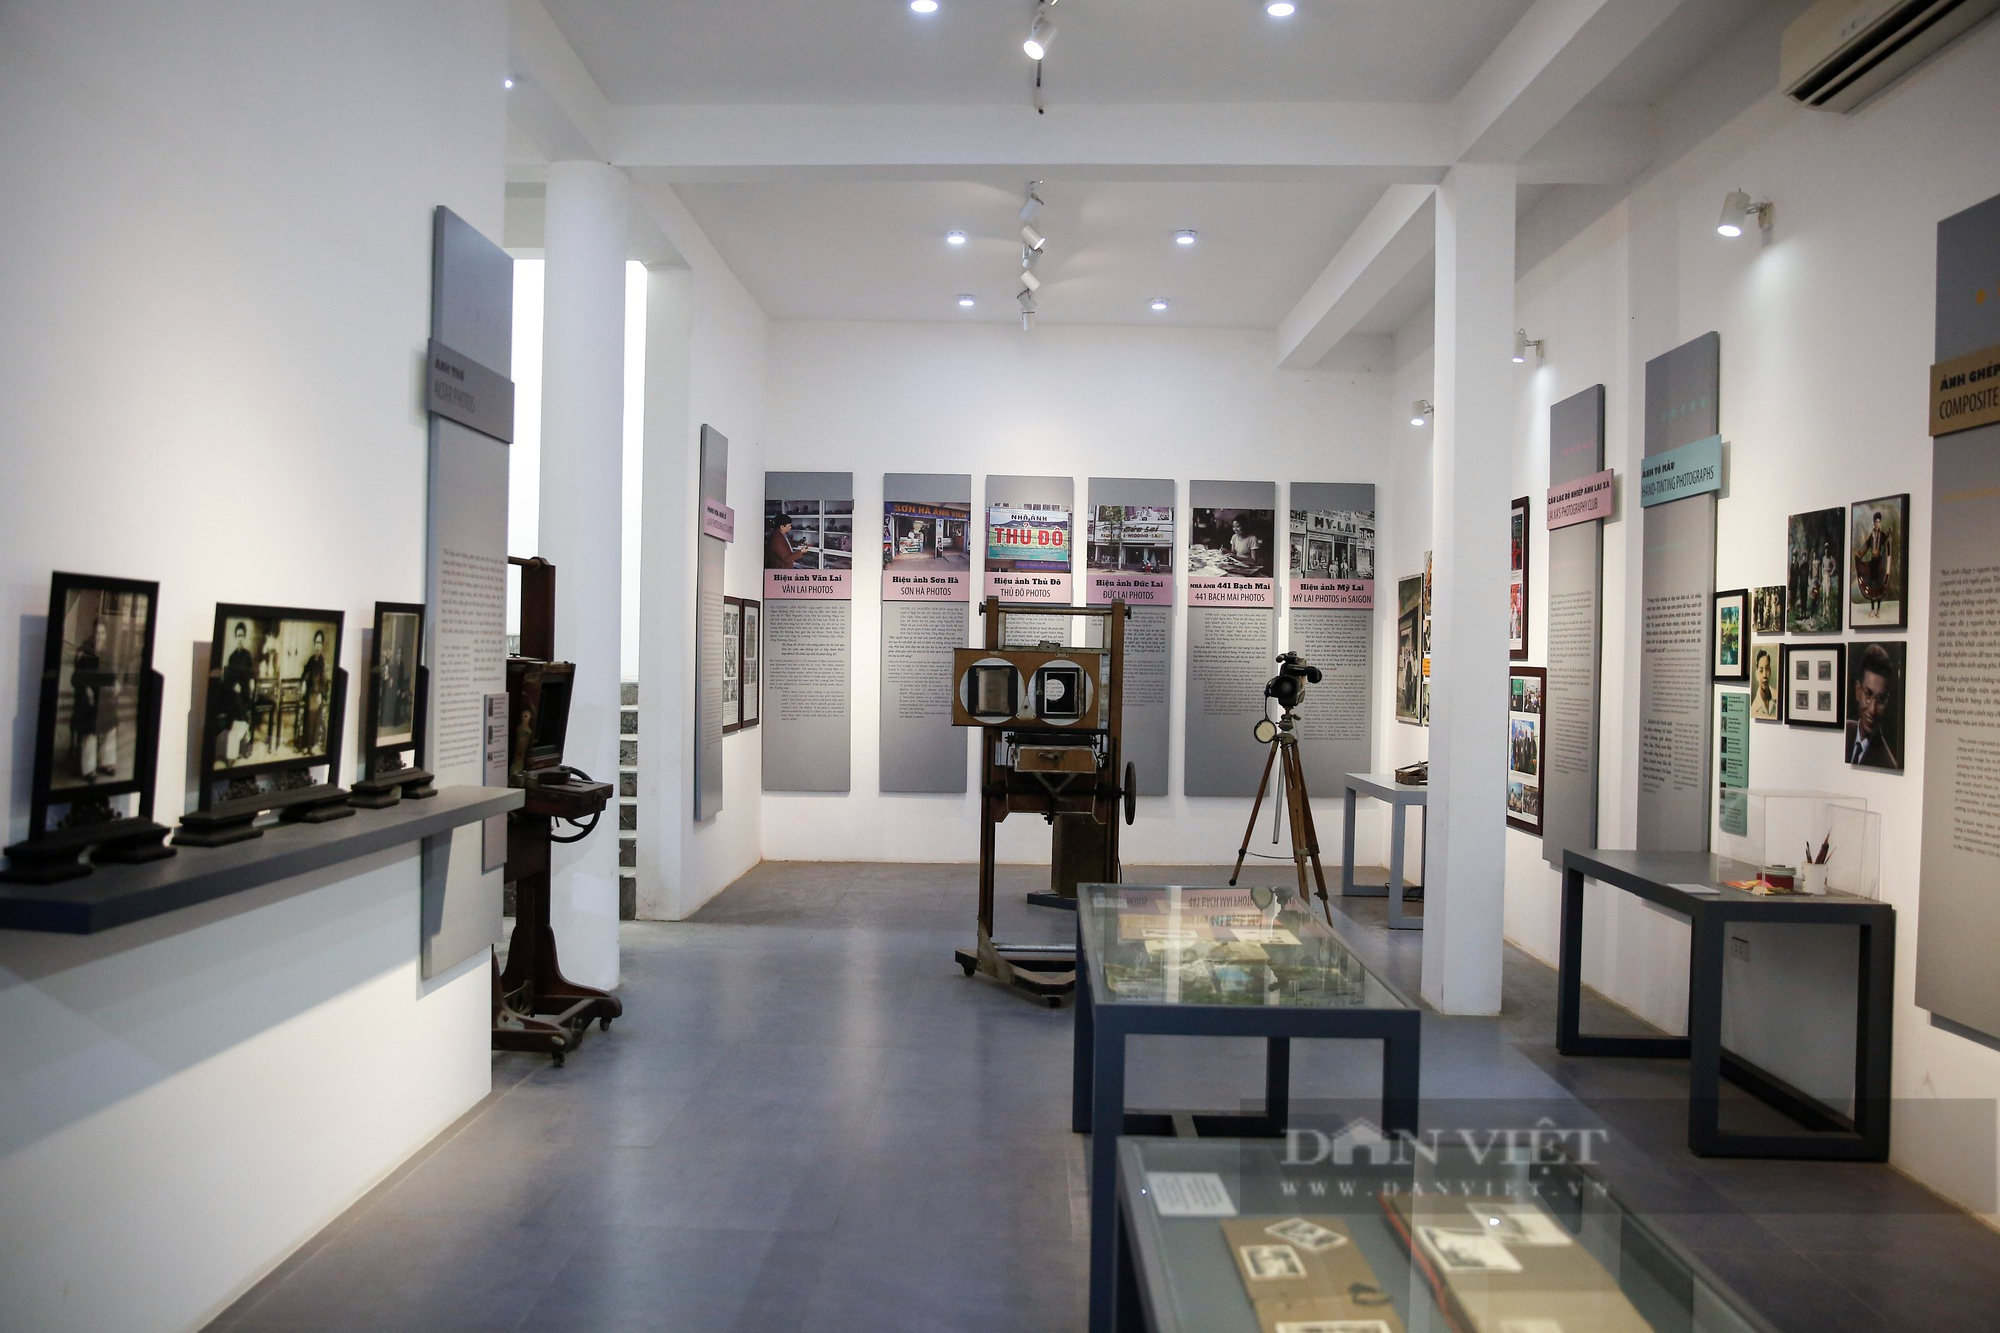 Khám phá bảo tàng nhiếp ảnh đầu tiên tại Hà Nội do dân làng góp tiền xây dựng - Ảnh 2.